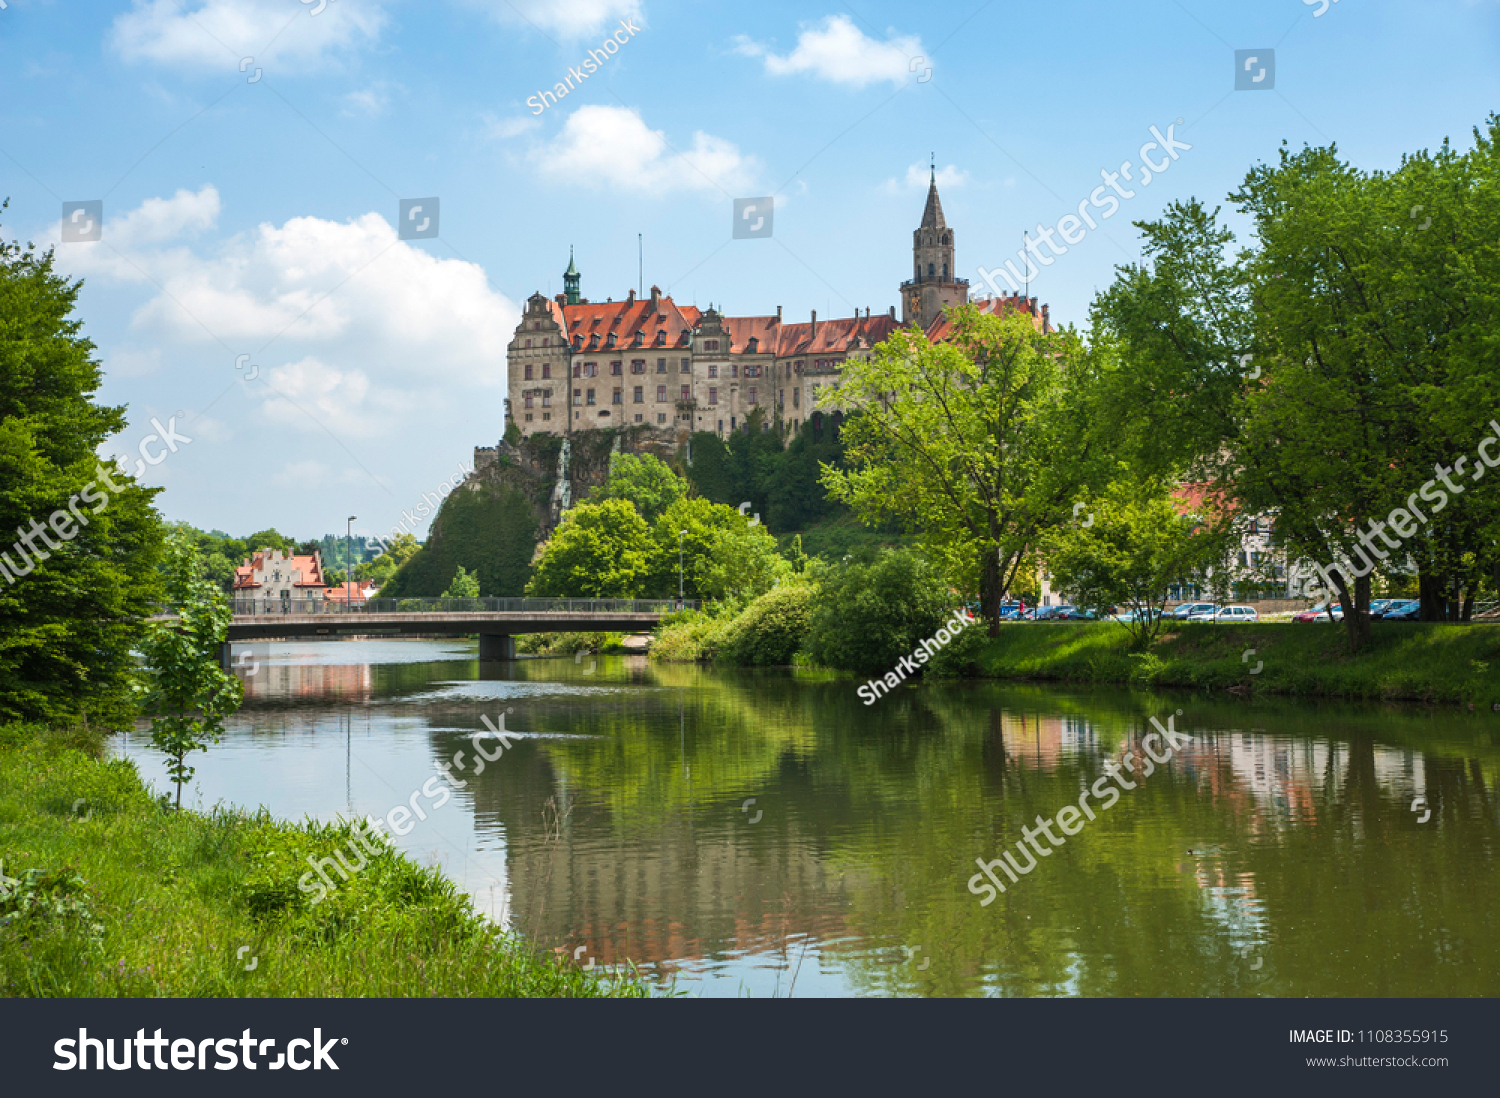 Sigmaringen Castle is seen across the Danube River. #1108355915